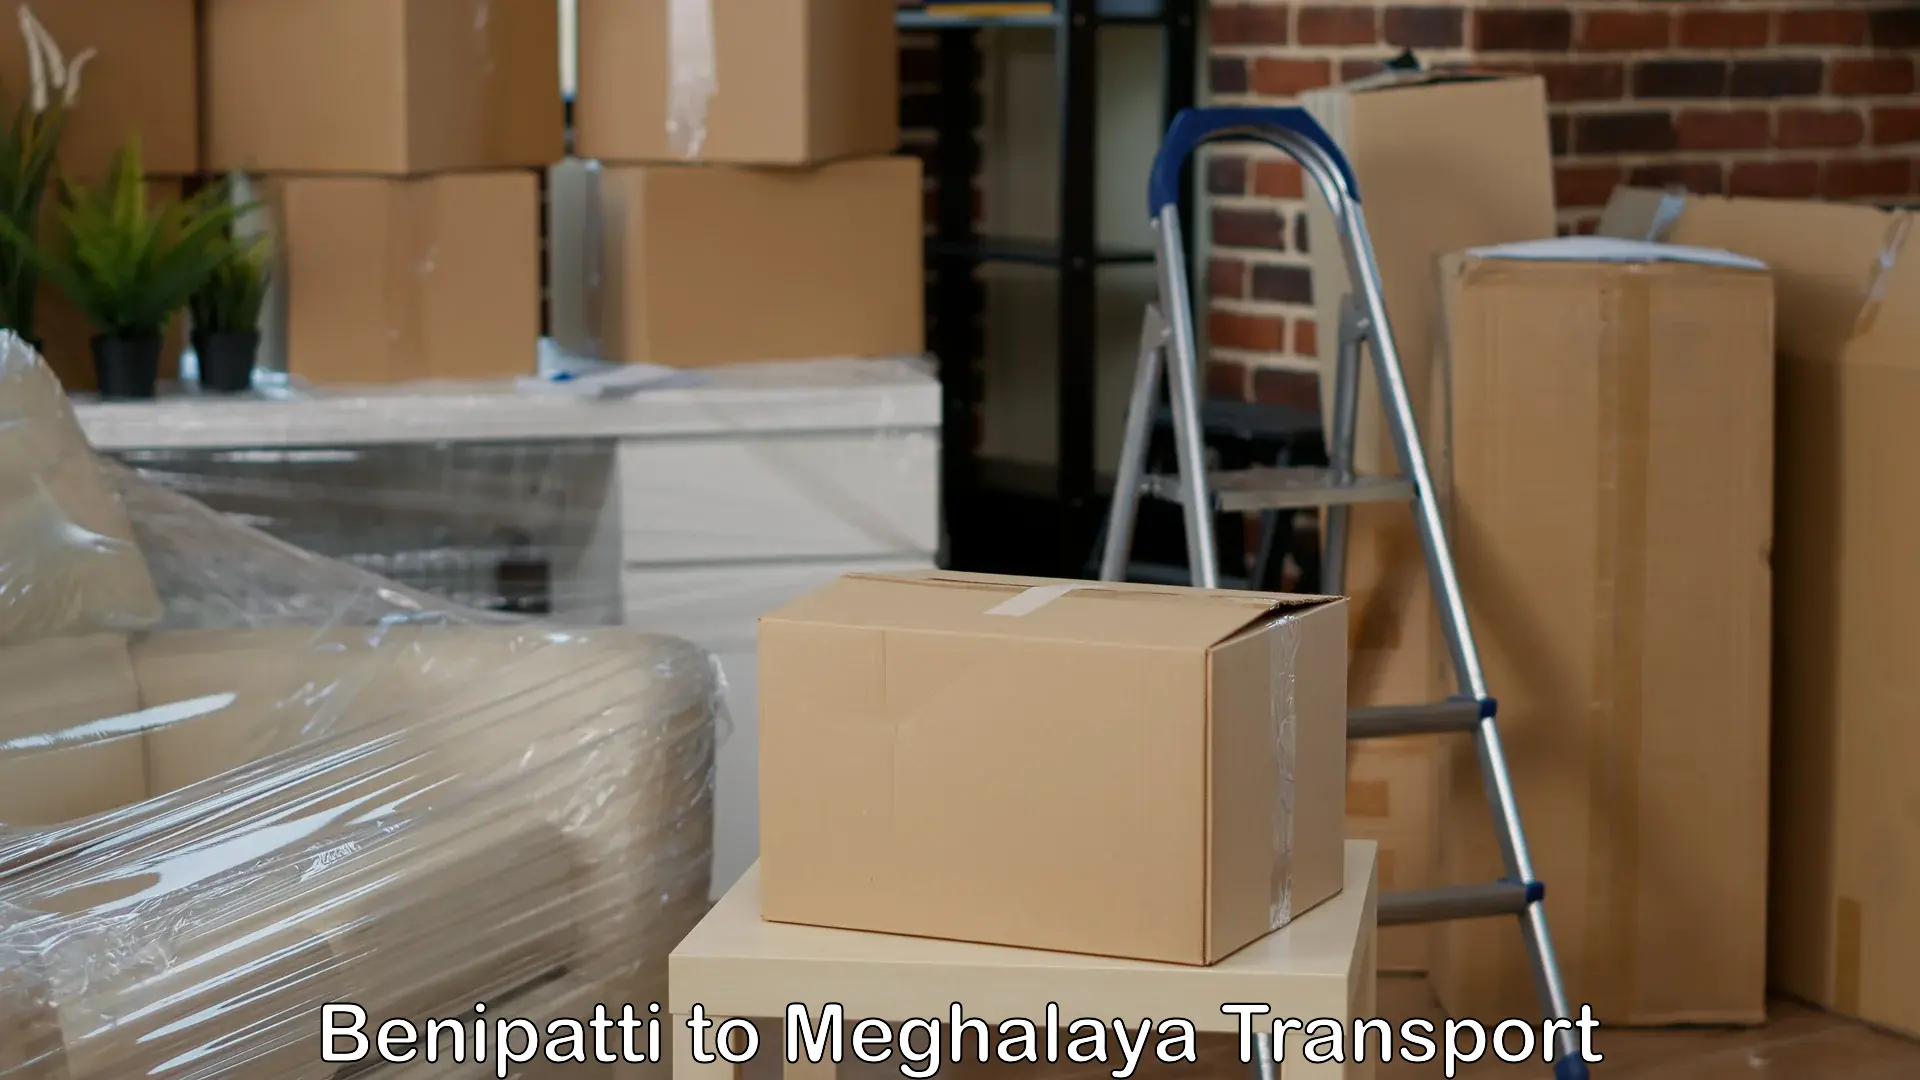 Delivery service Benipatti to Phulbari